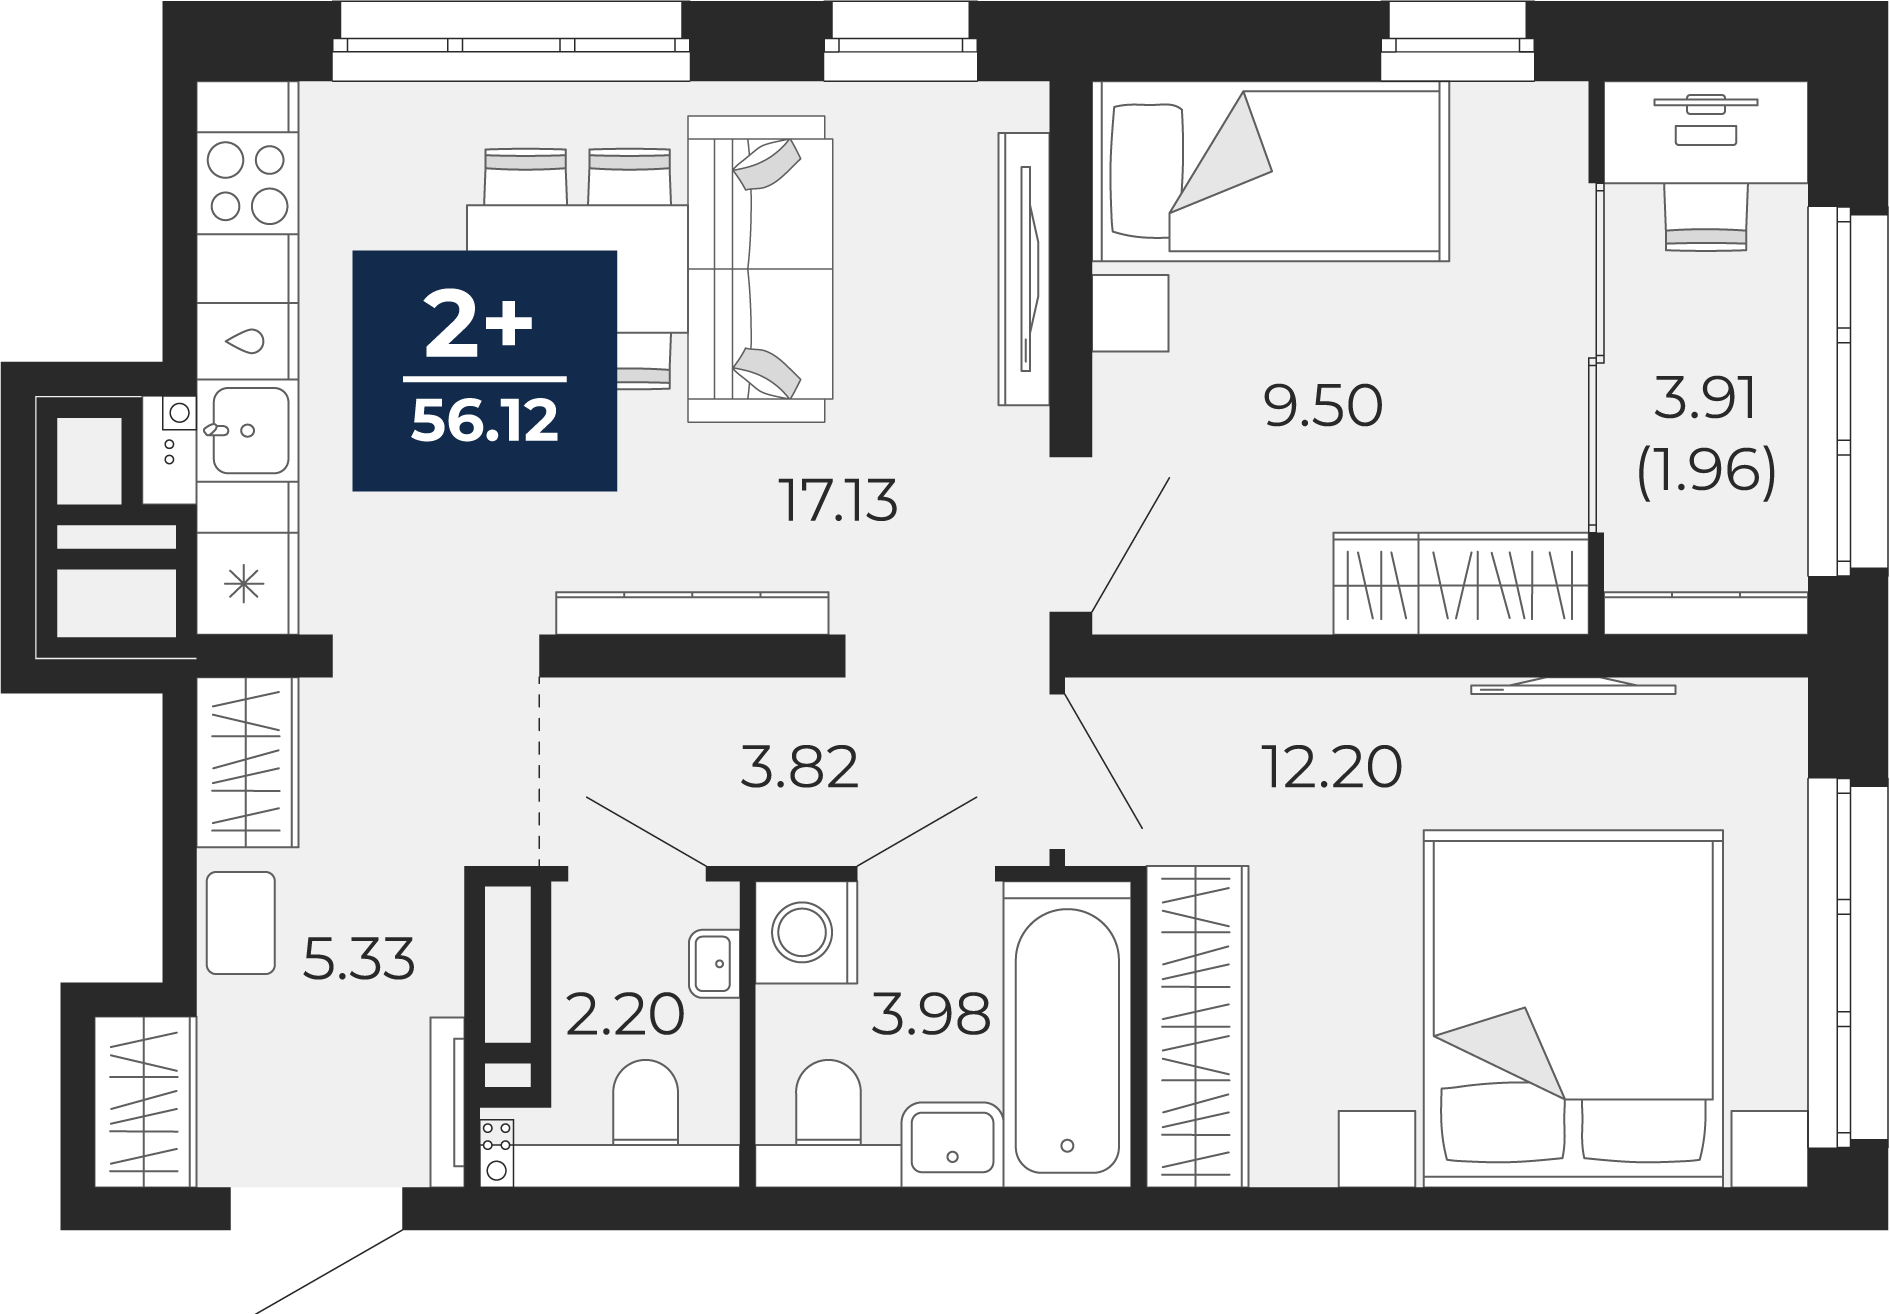 Квартира № 112, 2-комнатная, 56.12 кв. м, 8 этаж